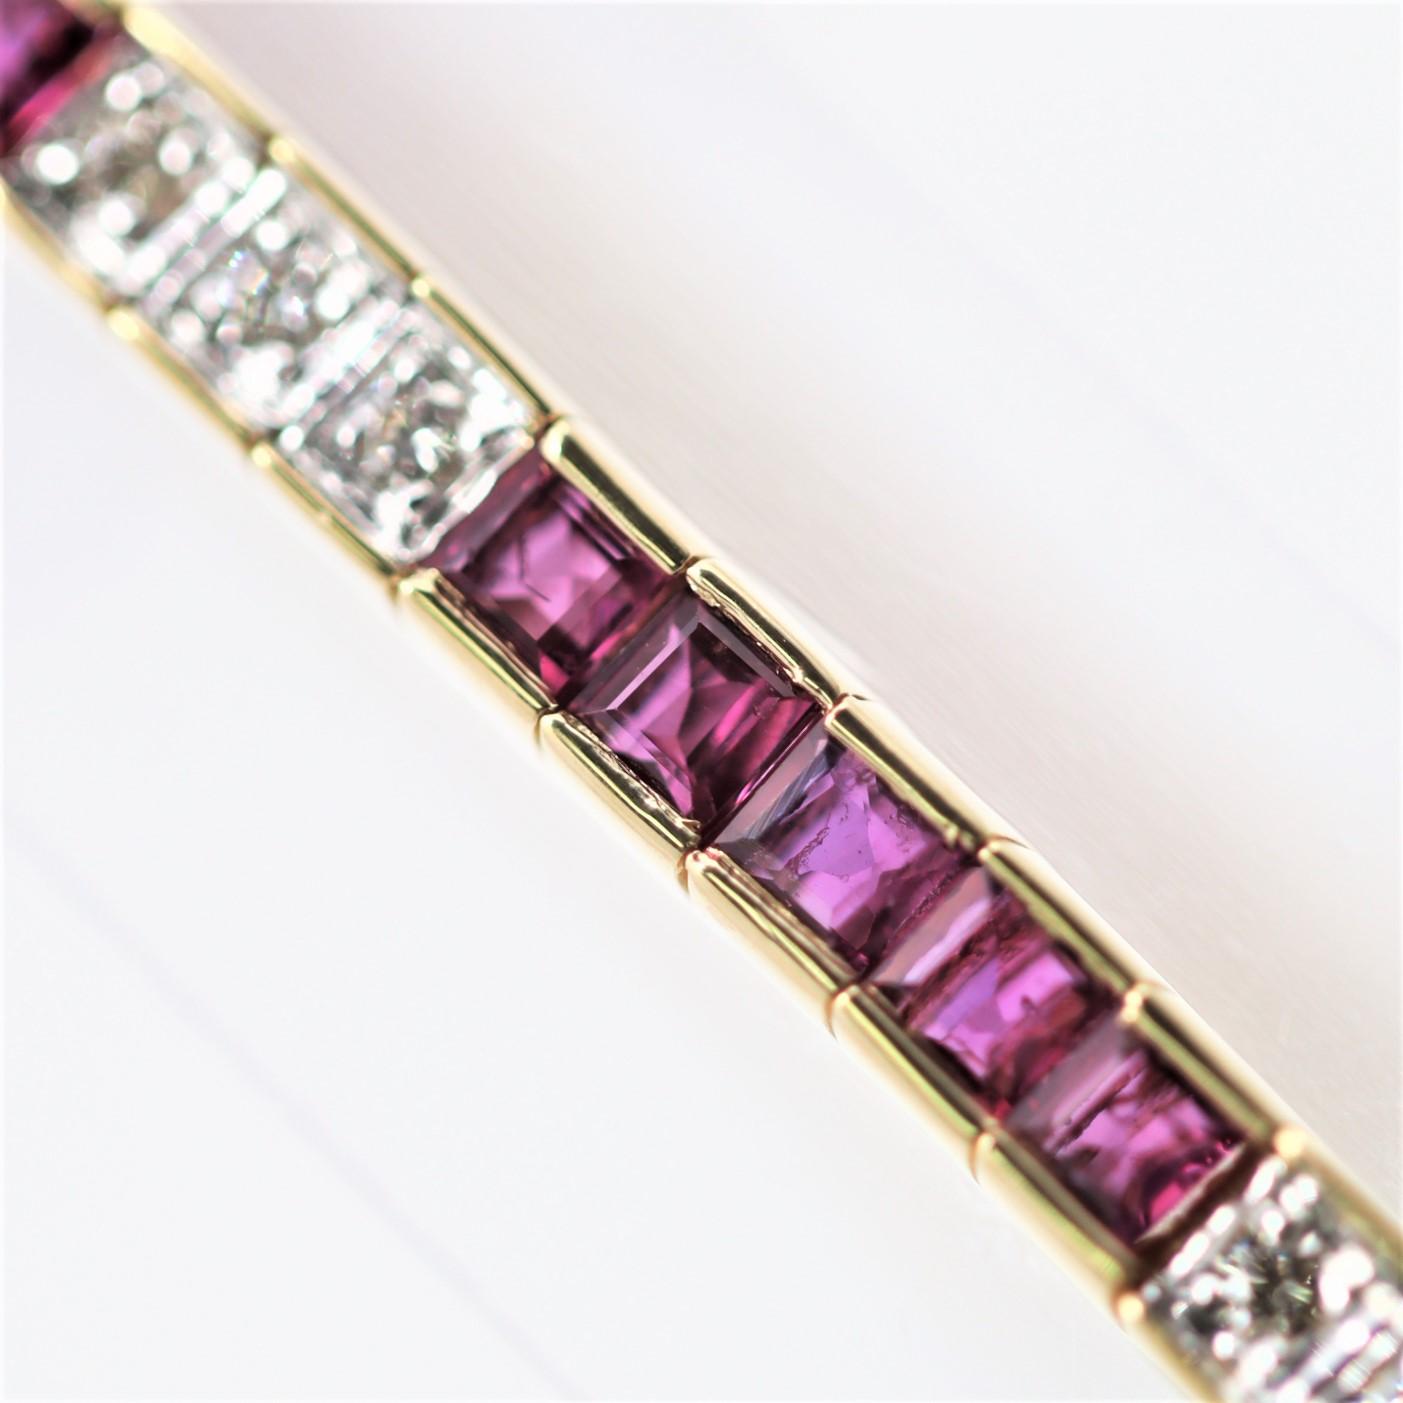 Ein stilvolles und stilvolles Linienarmband mit 5,20 Karat quadratischen Rubinen im französischen Schliff und 0,45 Karat runden Diamanten im Brillantschliff. Die Rubine haben eine intensive rote Farbe und werden von den Diamanten akzentuiert, die